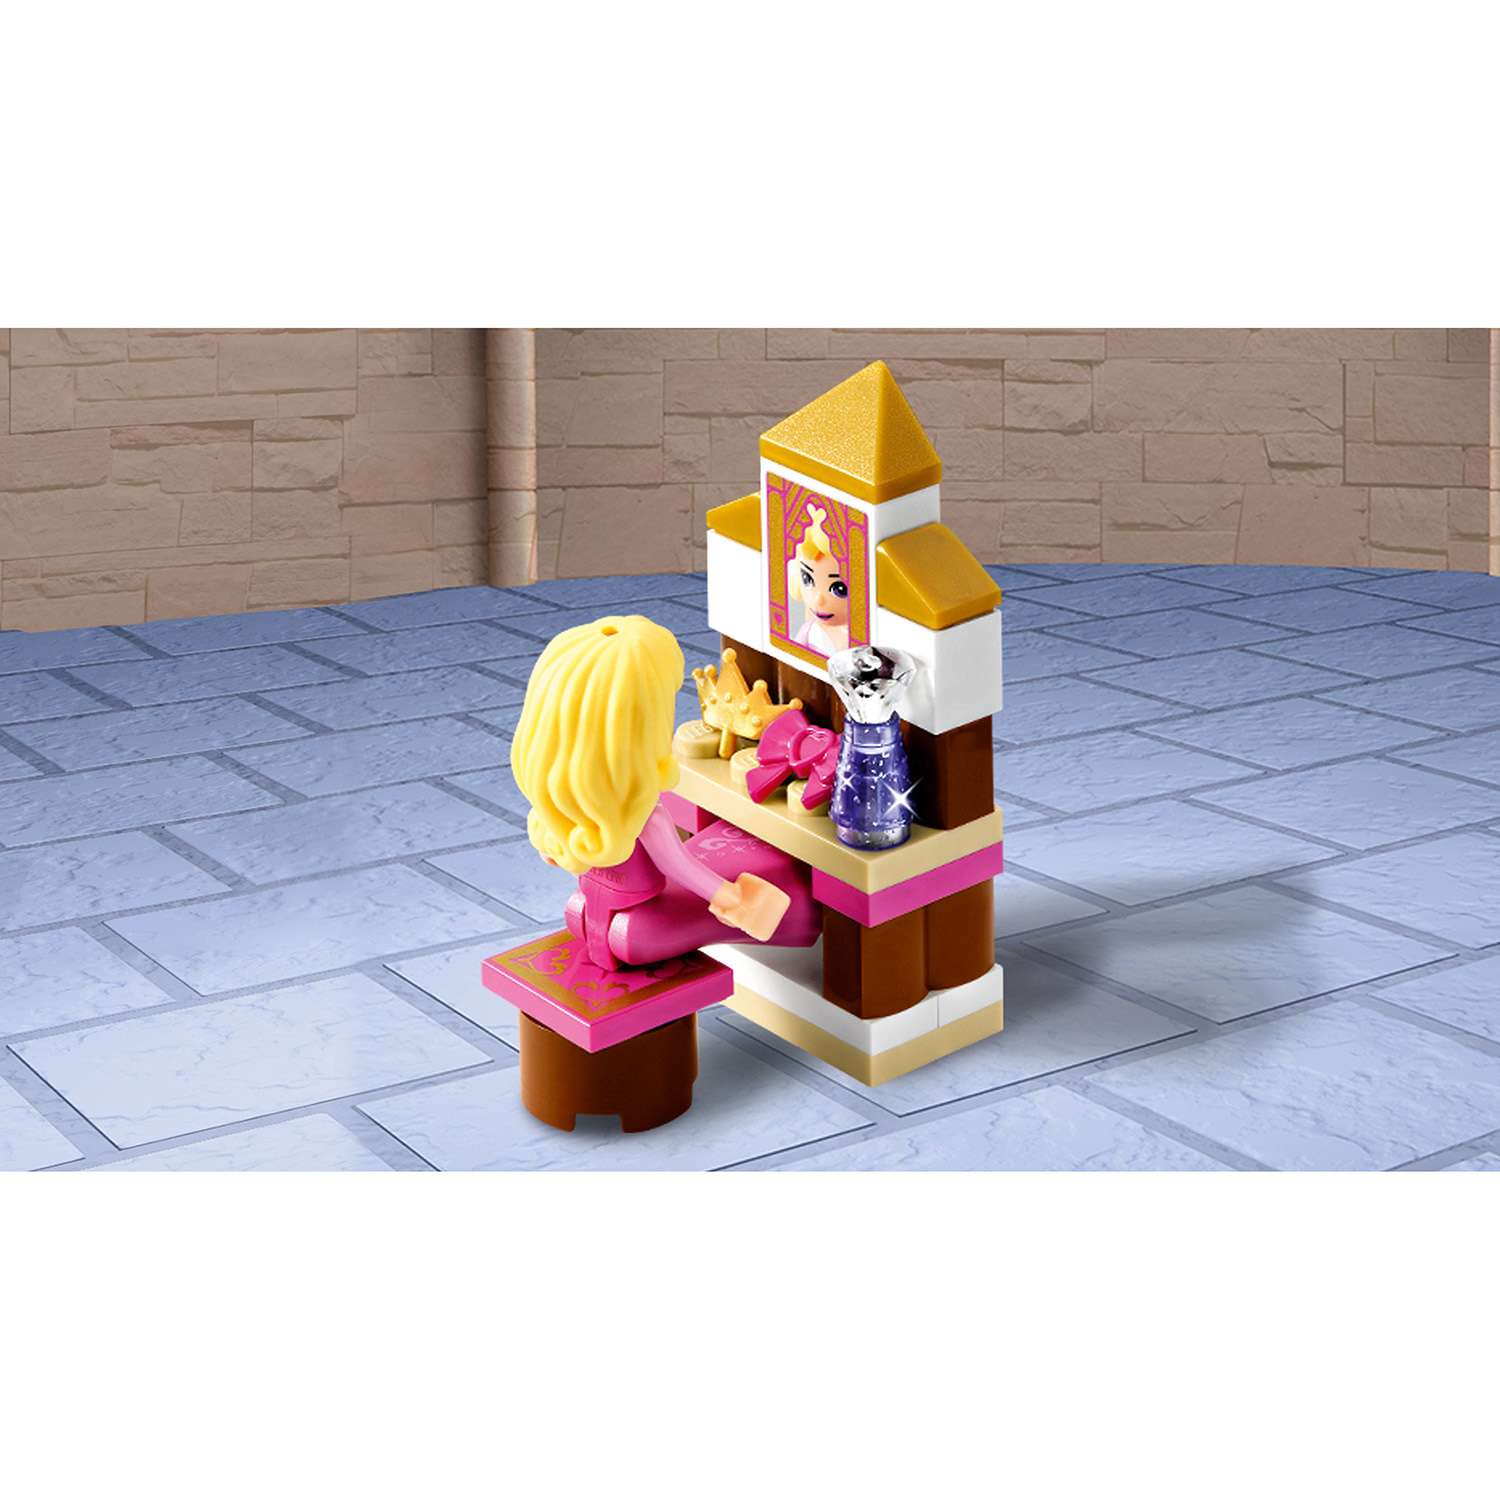 Конструктор LEGO Disney Princess Спальня Спящей красавицы (41060) - фото 7